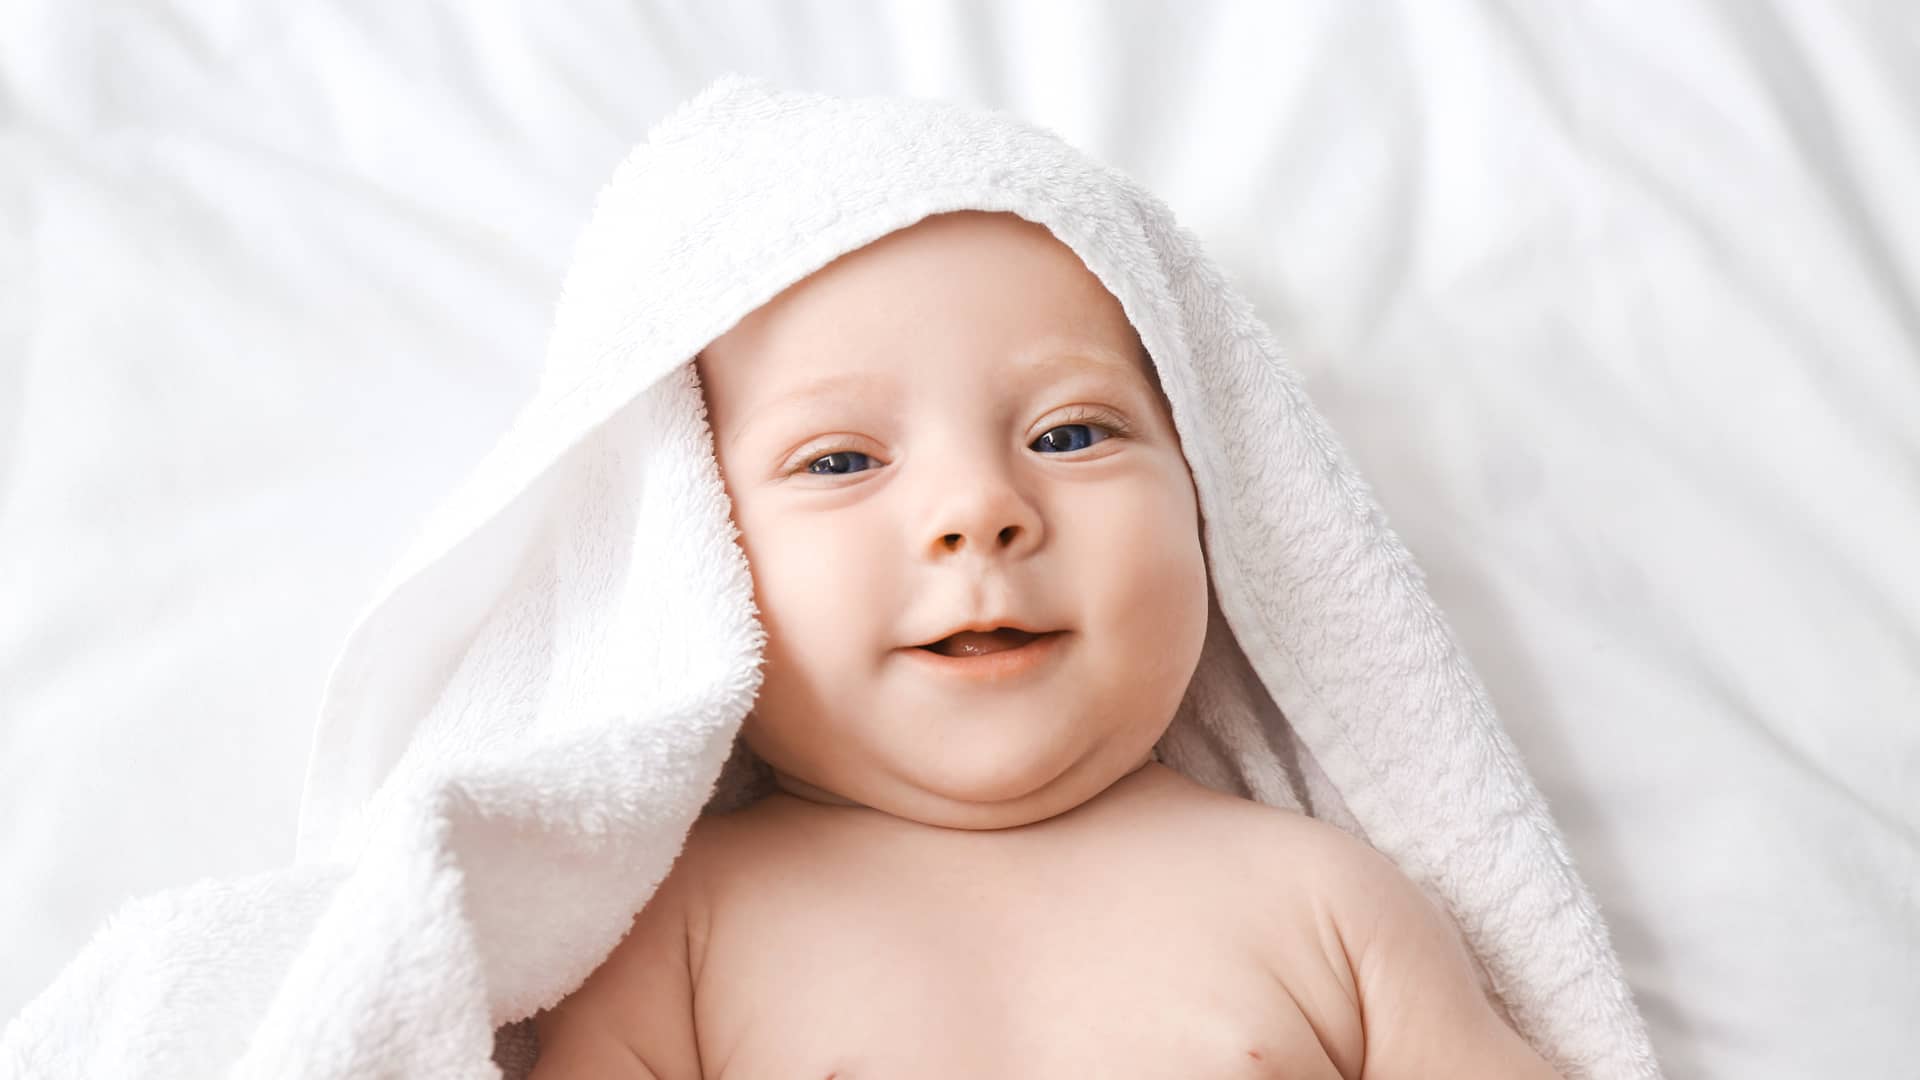 Bebé recién salido de la ducha sonriendo y mirando a cámara porque empieza a ver